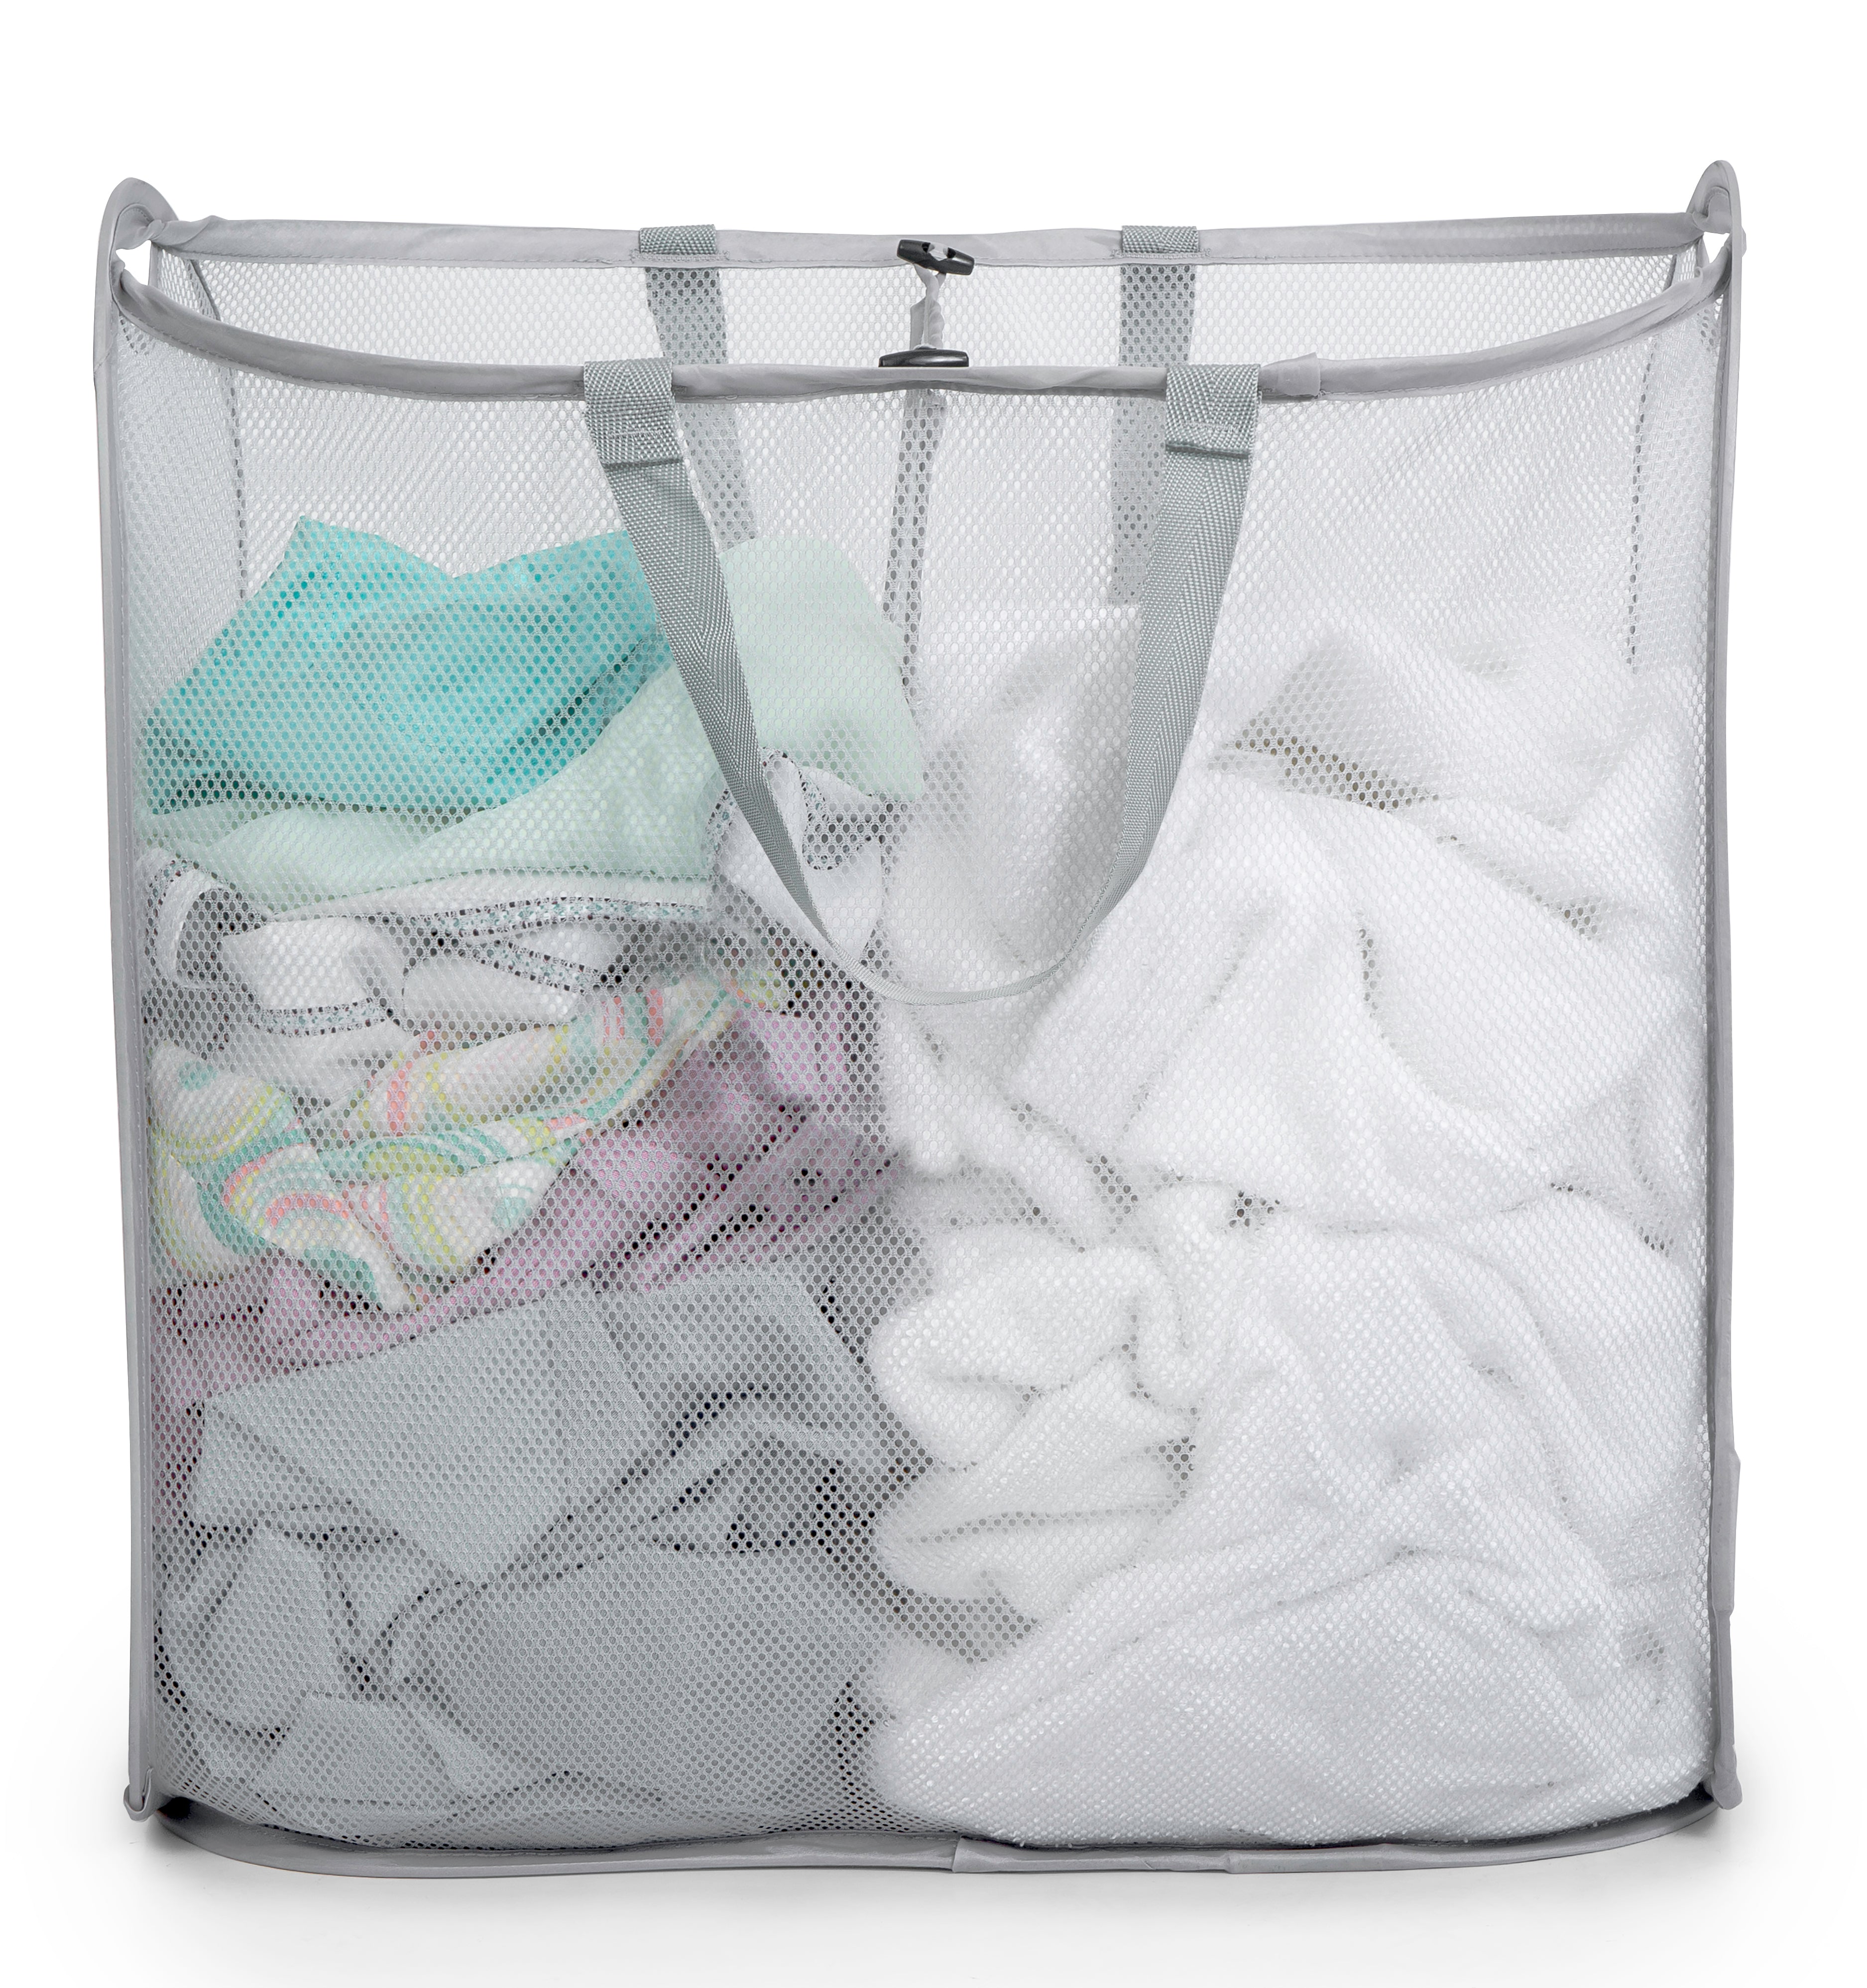 Slim Pop-Up Laundry Hamper with Center Divider & Portable Handles - Smart Design® 2